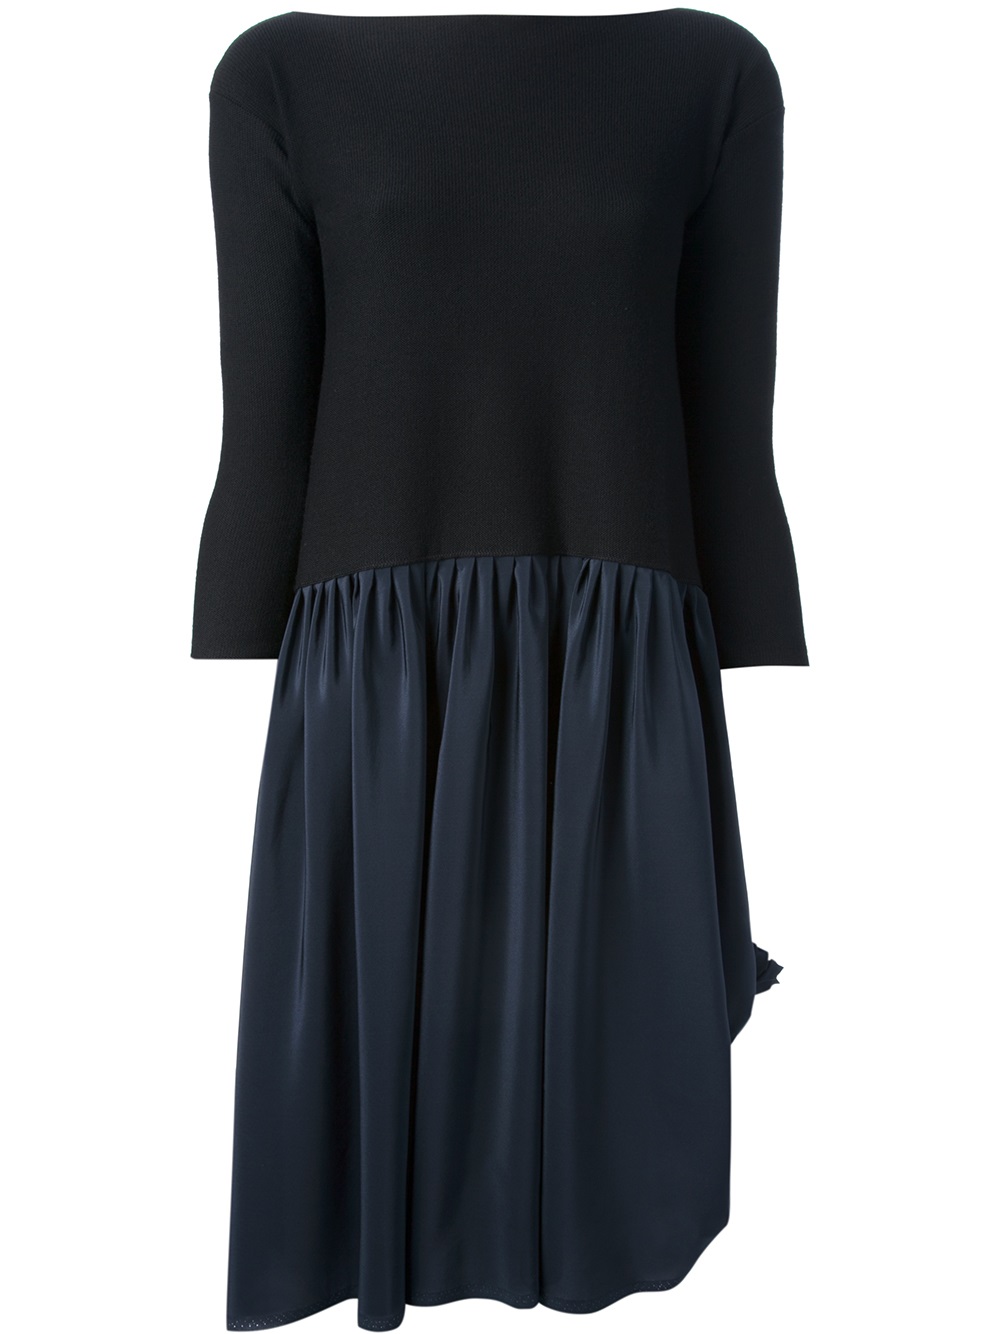 Daniela Gregis Daniela Gregis Boat Neck Knit Dress in Blue (black) | Lyst